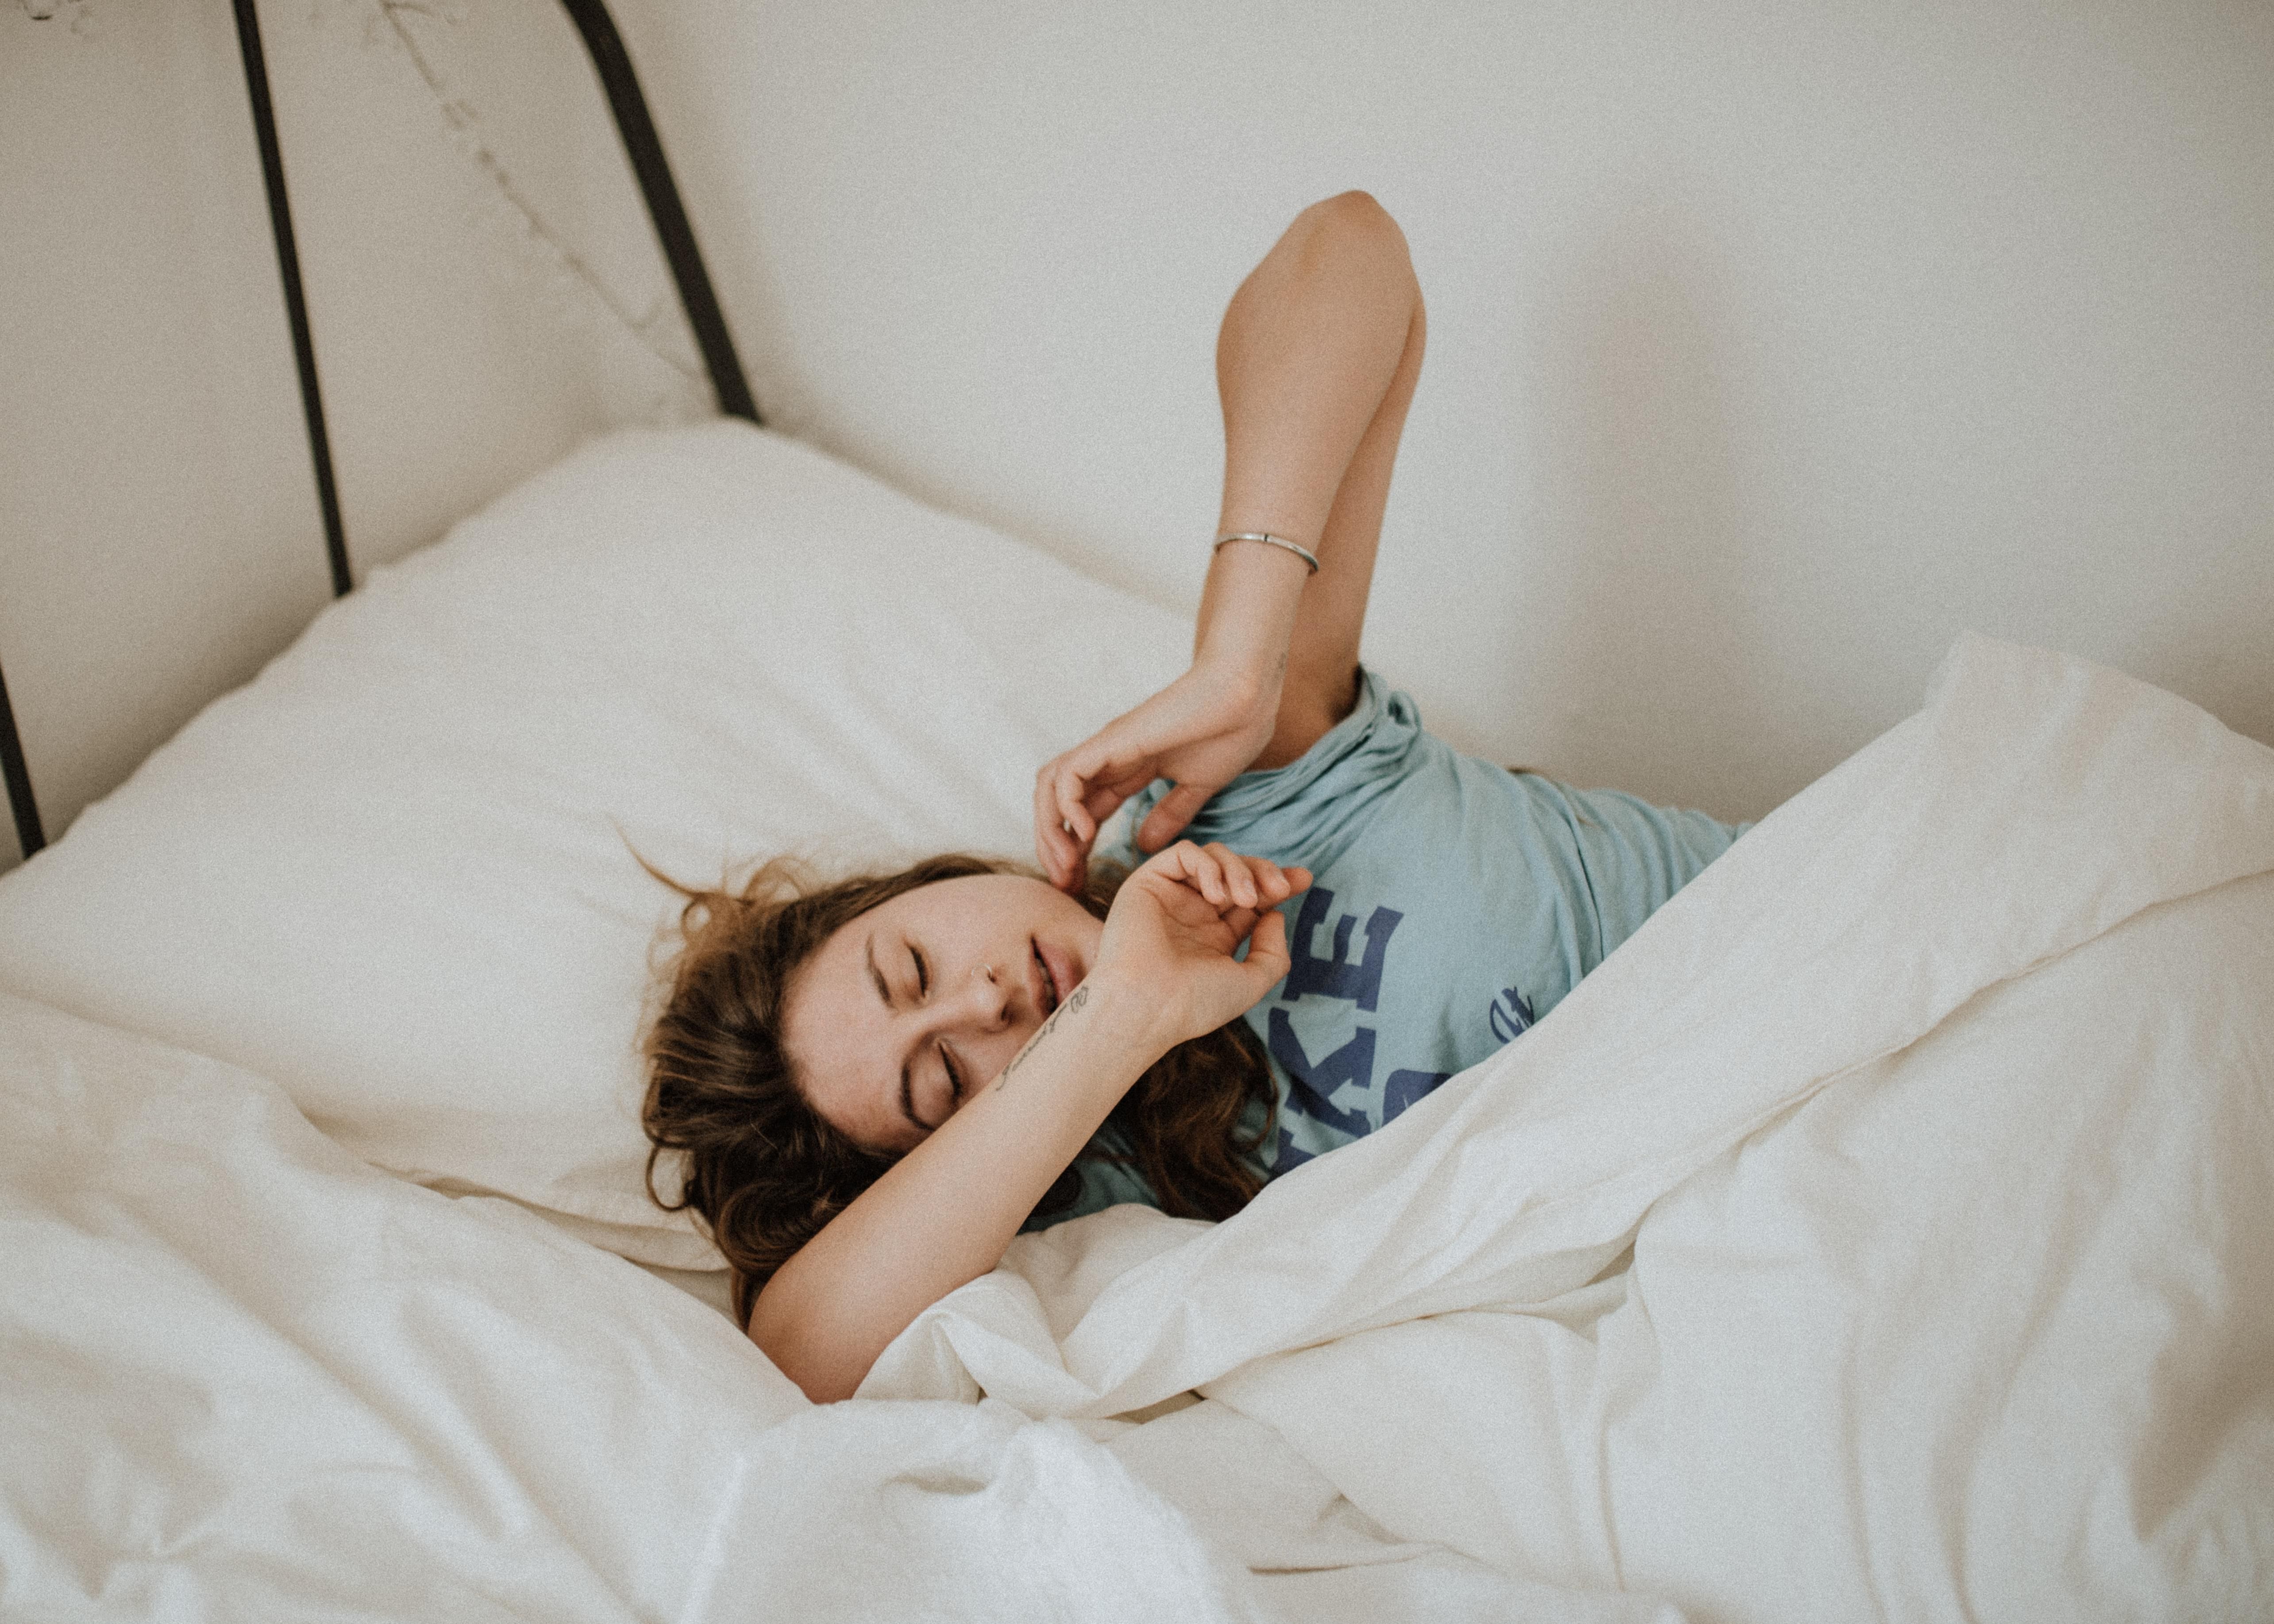 Даже один дополнительный час сна позволяет резко похудеть: новое исследование